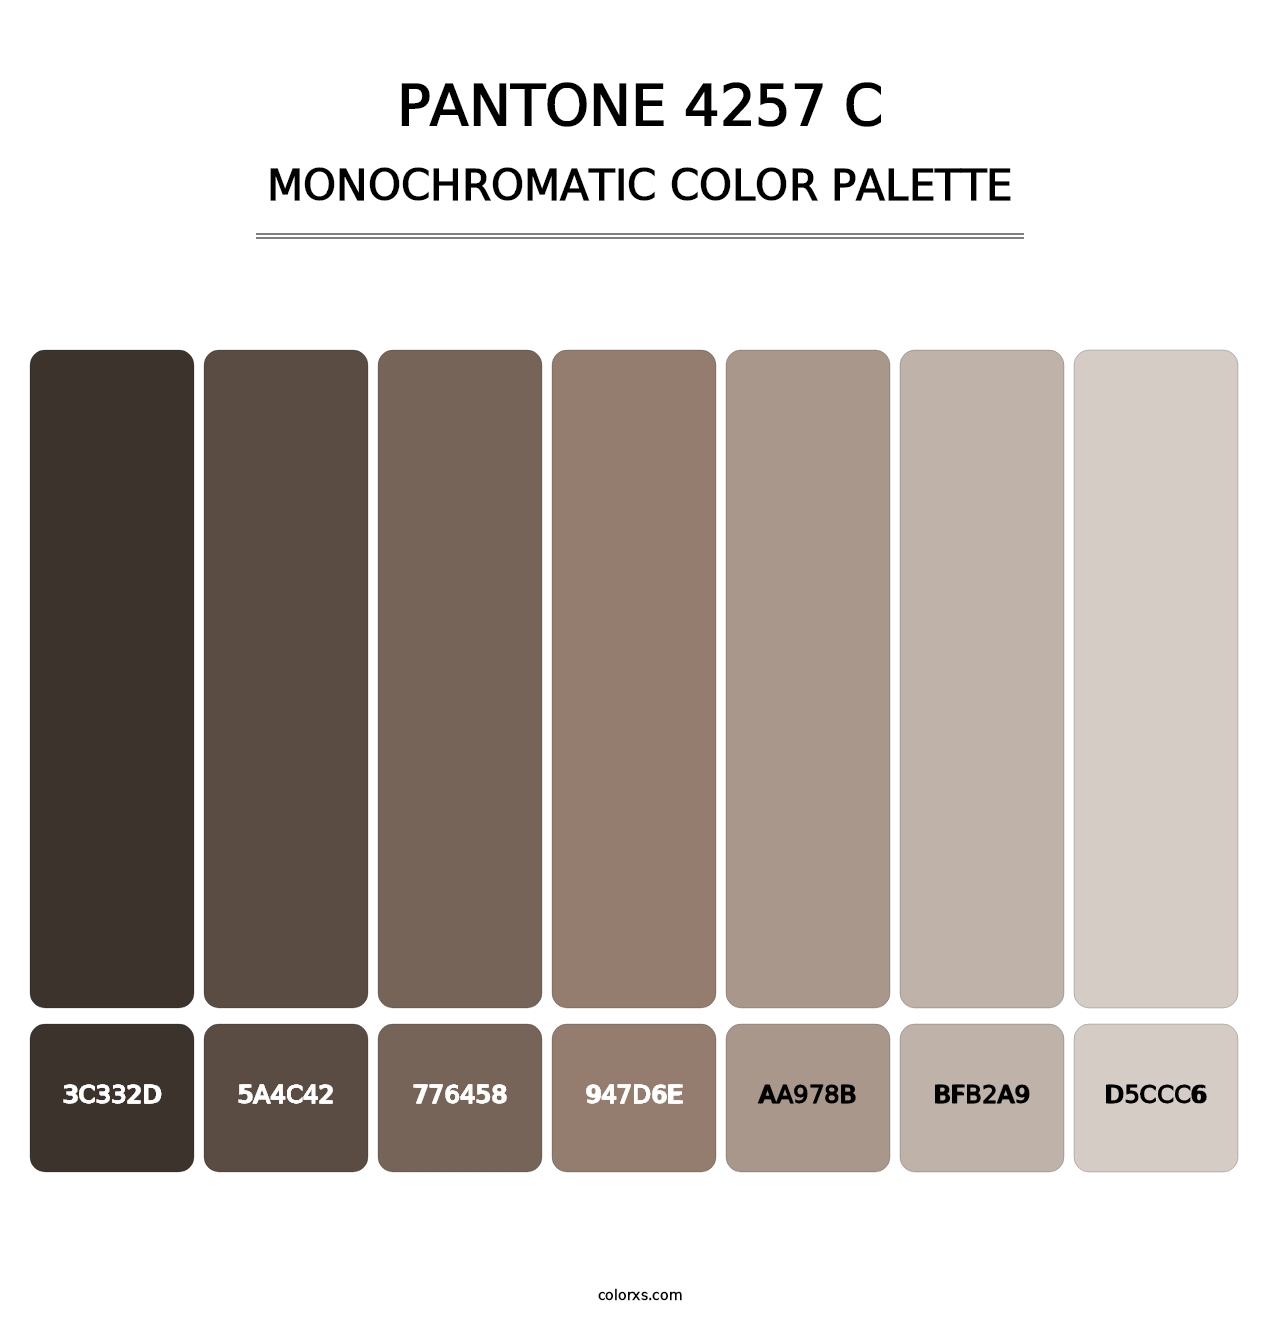 PANTONE 4257 C - Monochromatic Color Palette